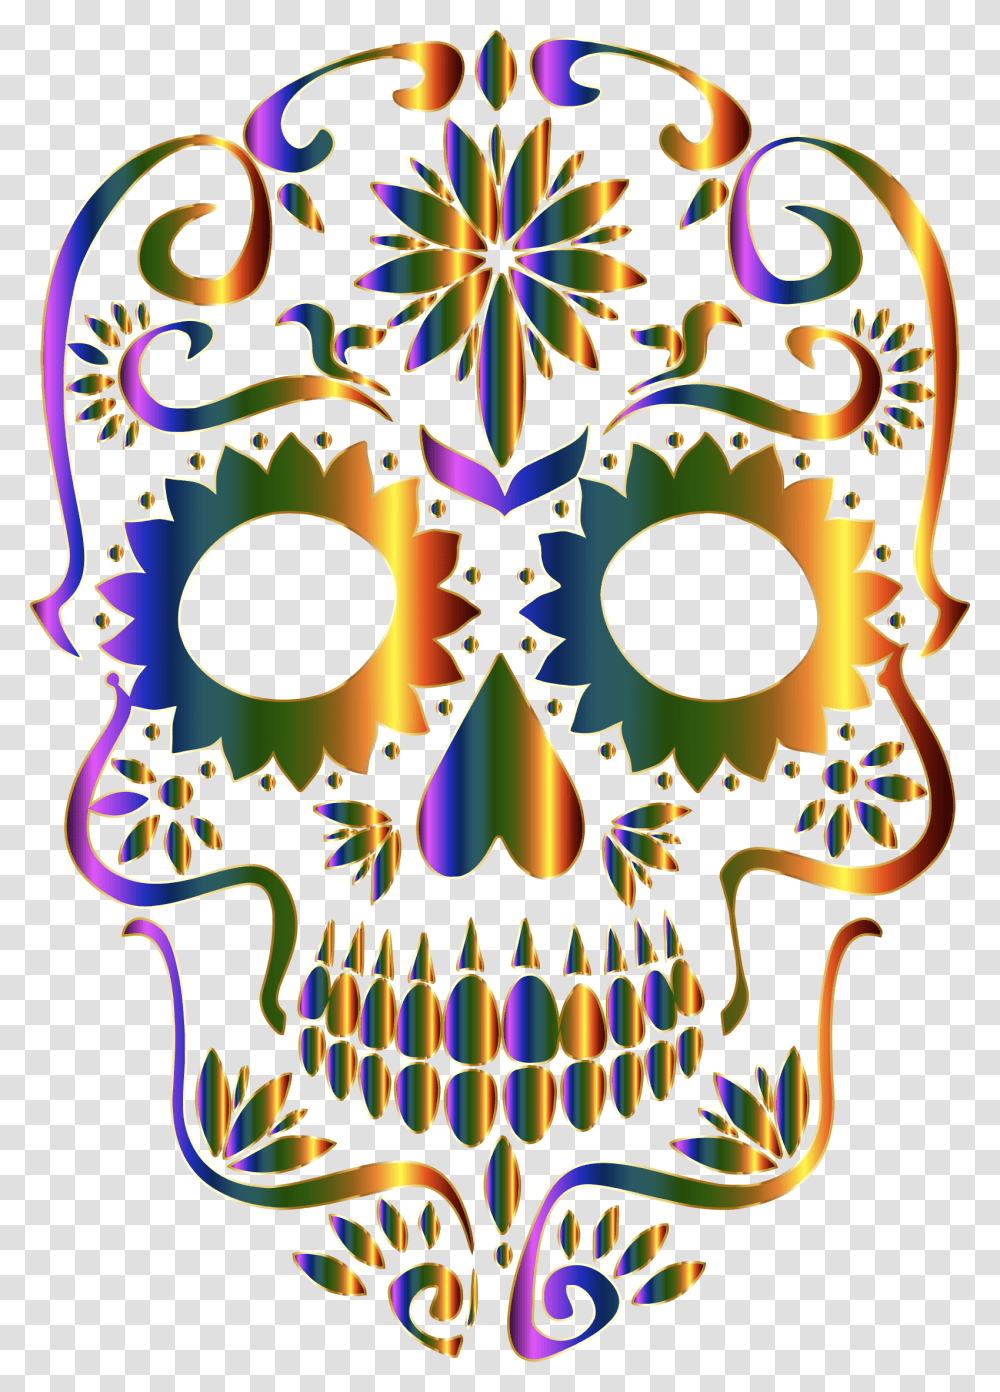 Sugar Skull Clipart Background Background Sugar Skull, Pattern, Ornament, Fractal Transparent Png